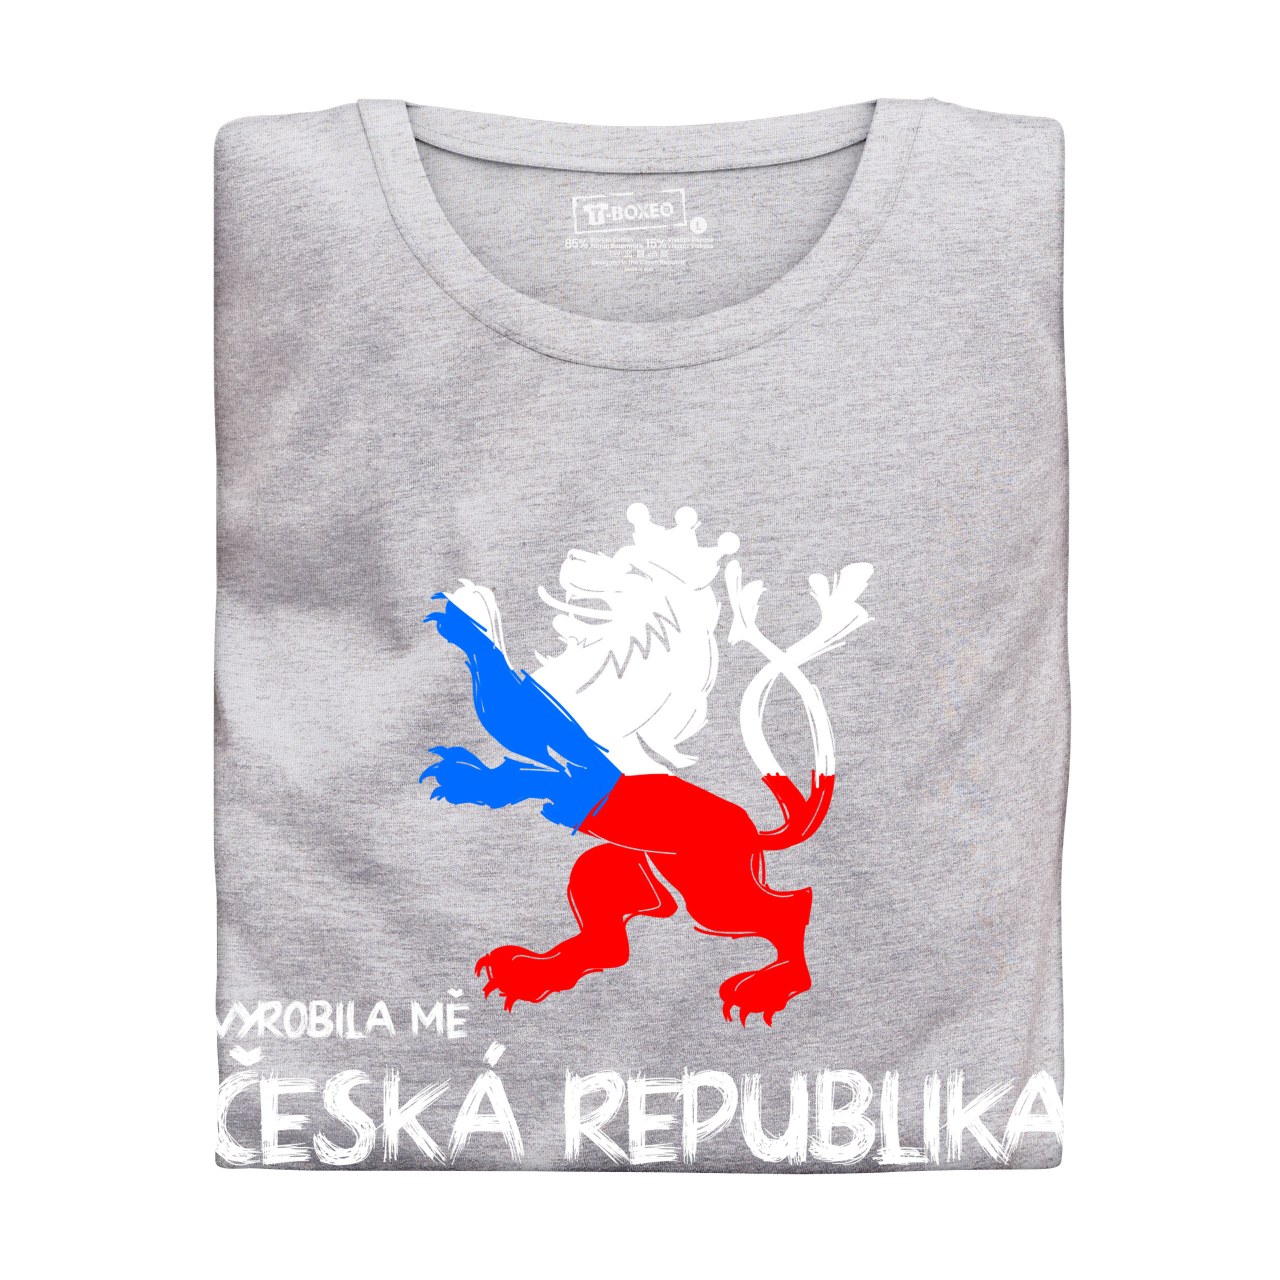 Dámské tričko s potiskem “Vyrobila mě Česká republika” 